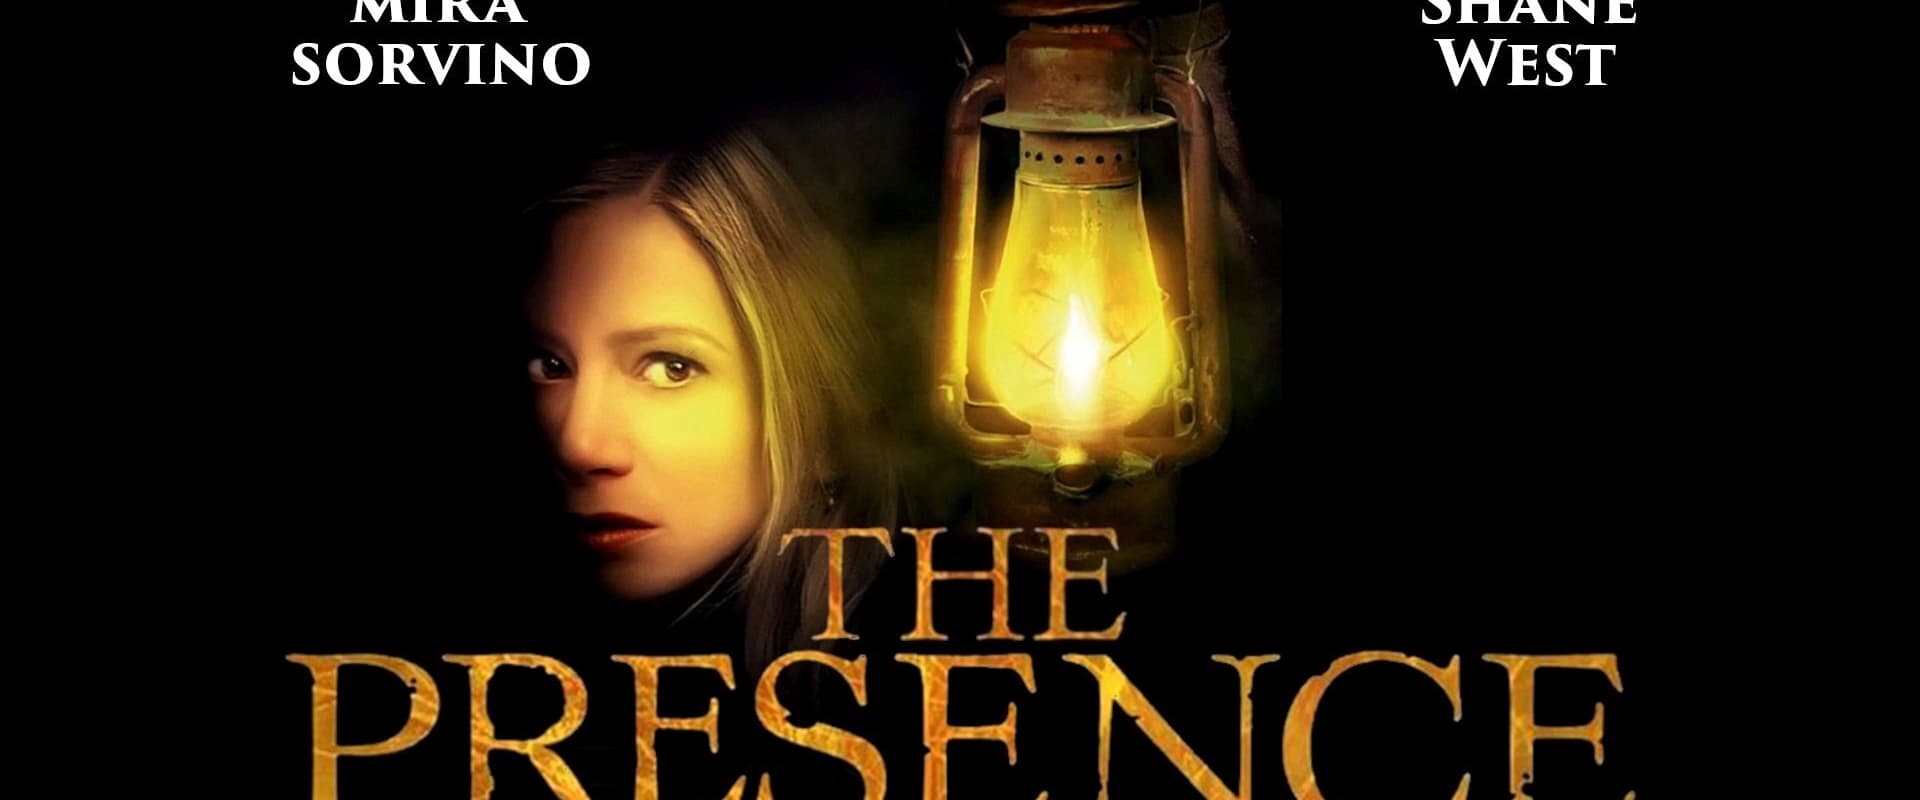 La presencia (The Presence)